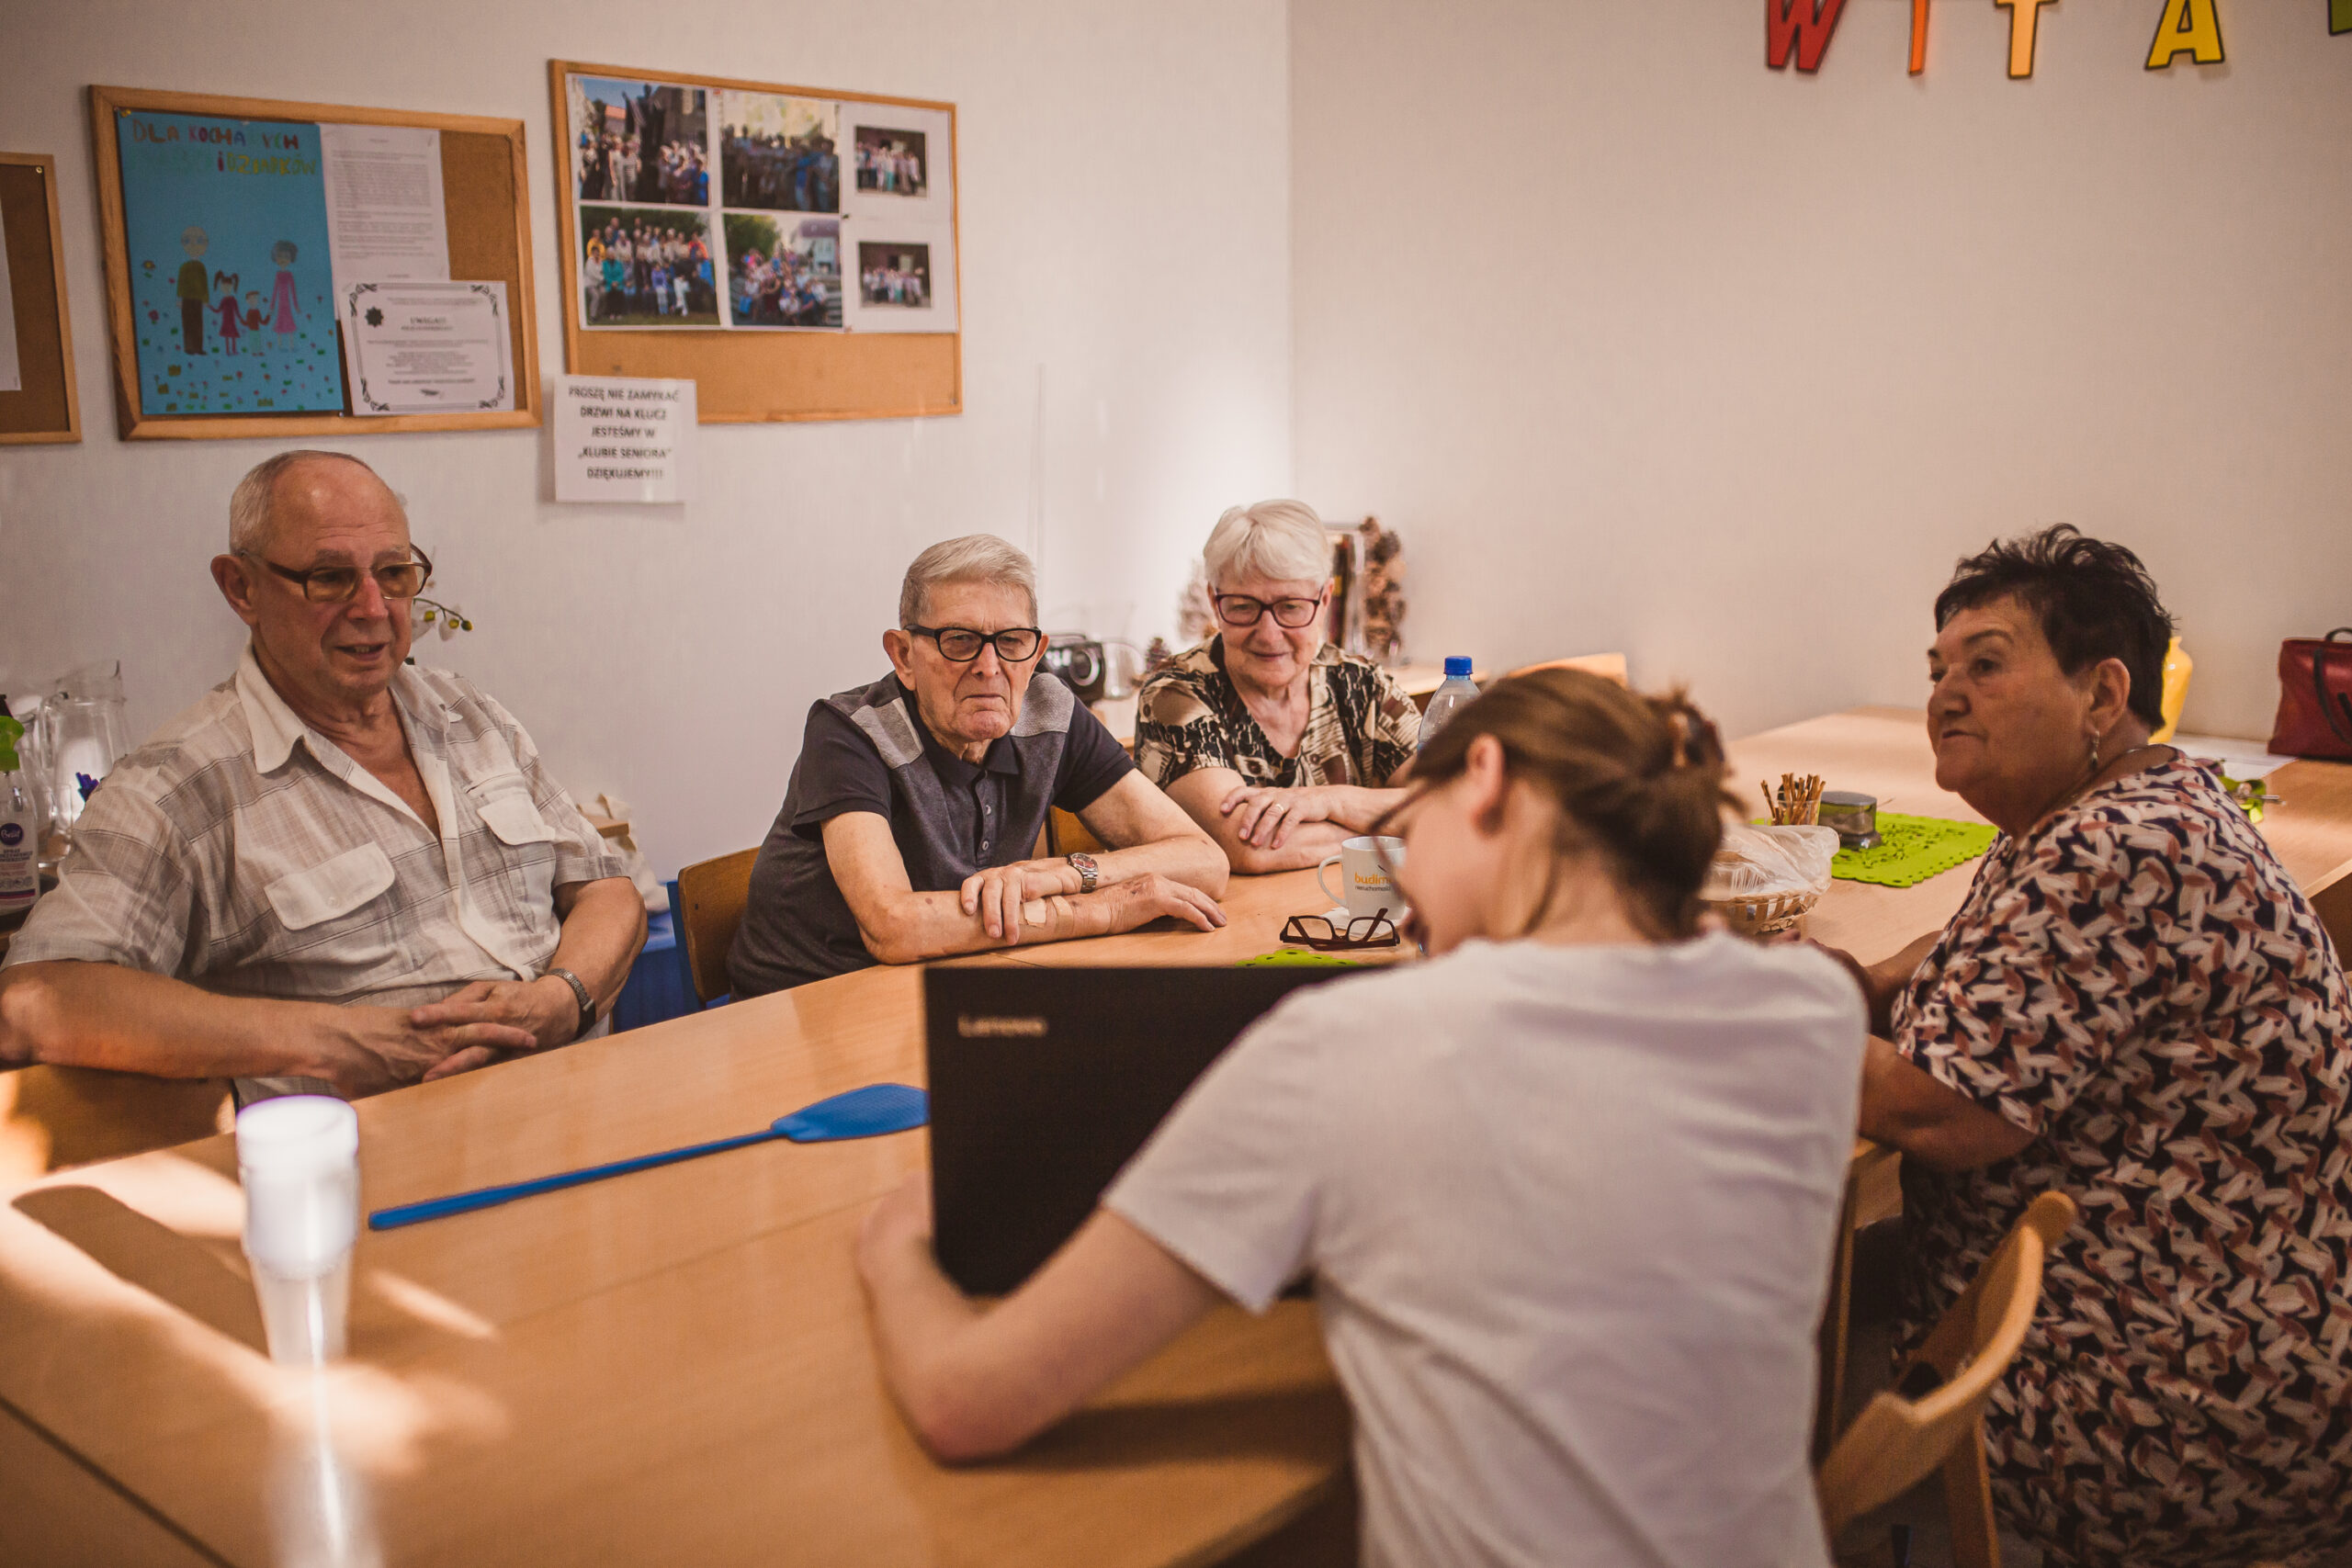 zdjęcie przedstawia grupę seniorów oraz młodą osobę z laptopem siedzących przy stole podczas warsztatów poste restante